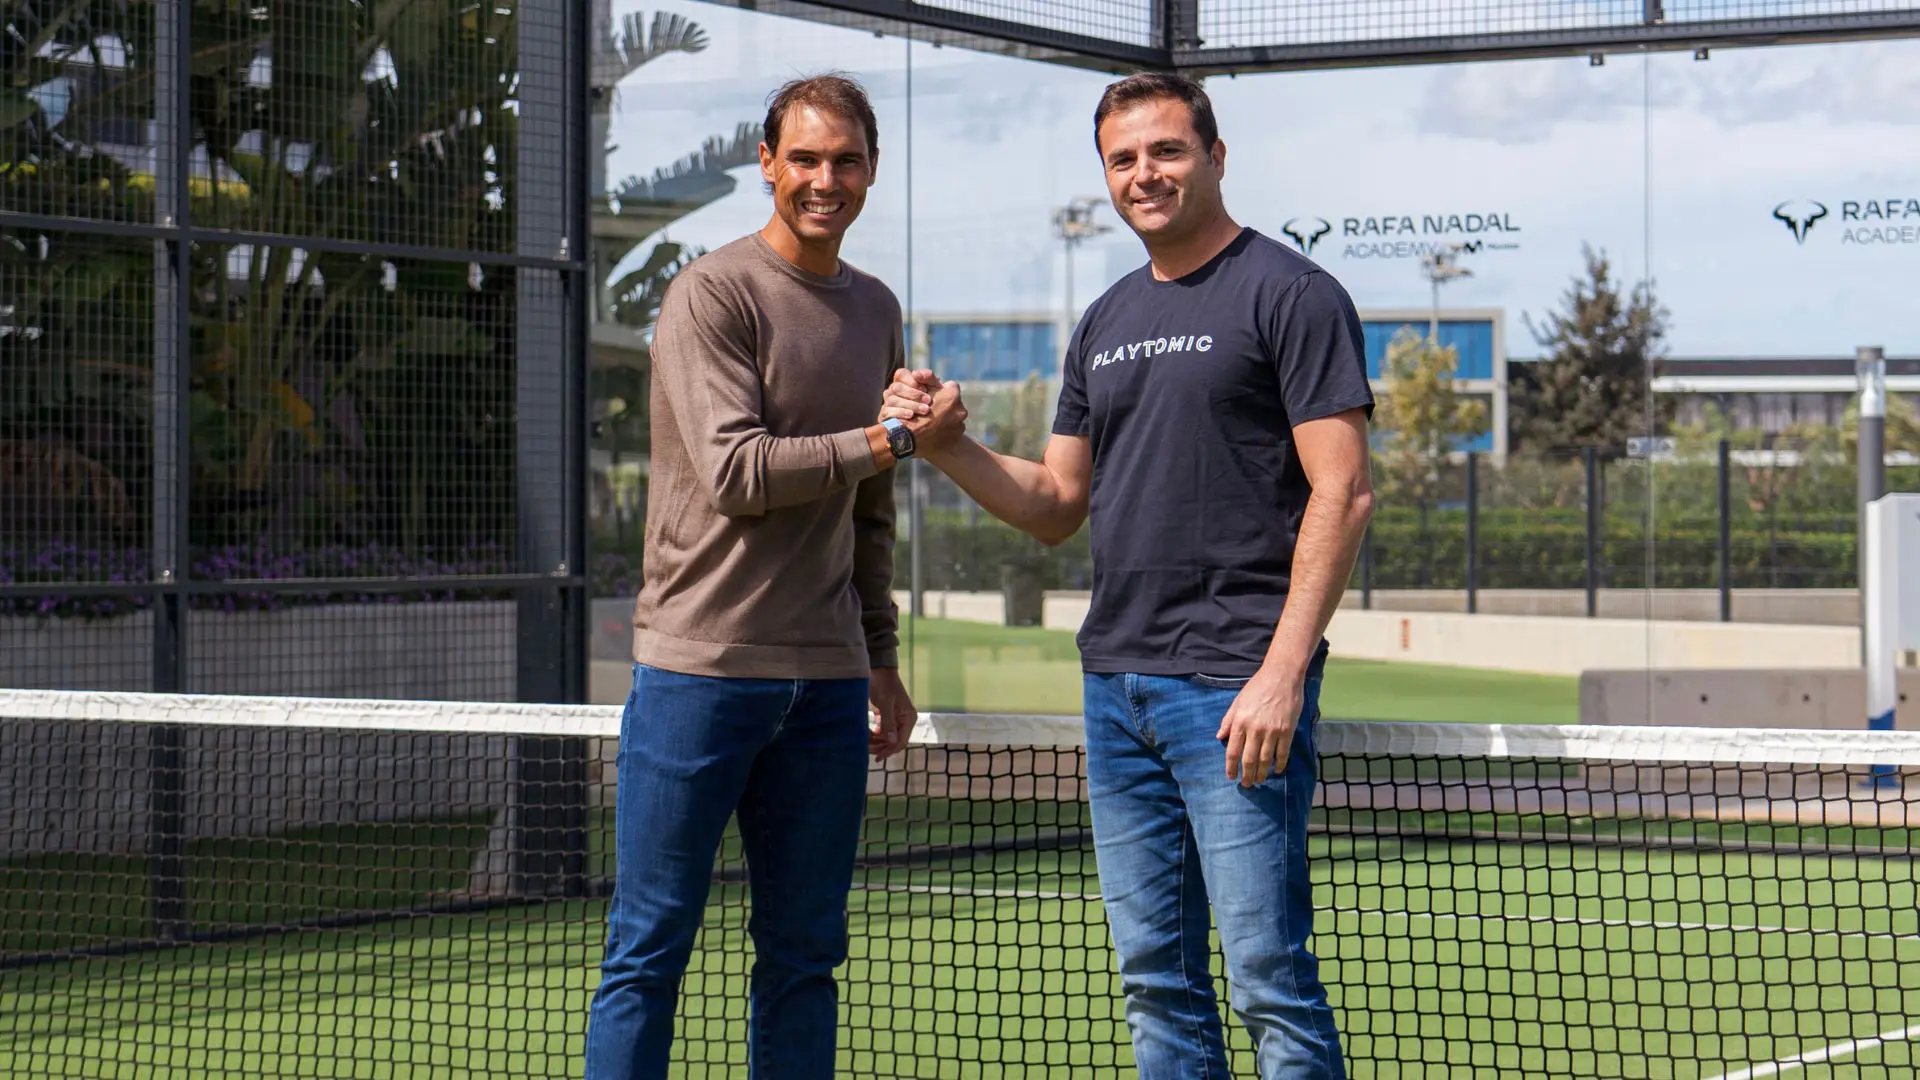 Rafael Nadal bliver aktionær i Playtomic